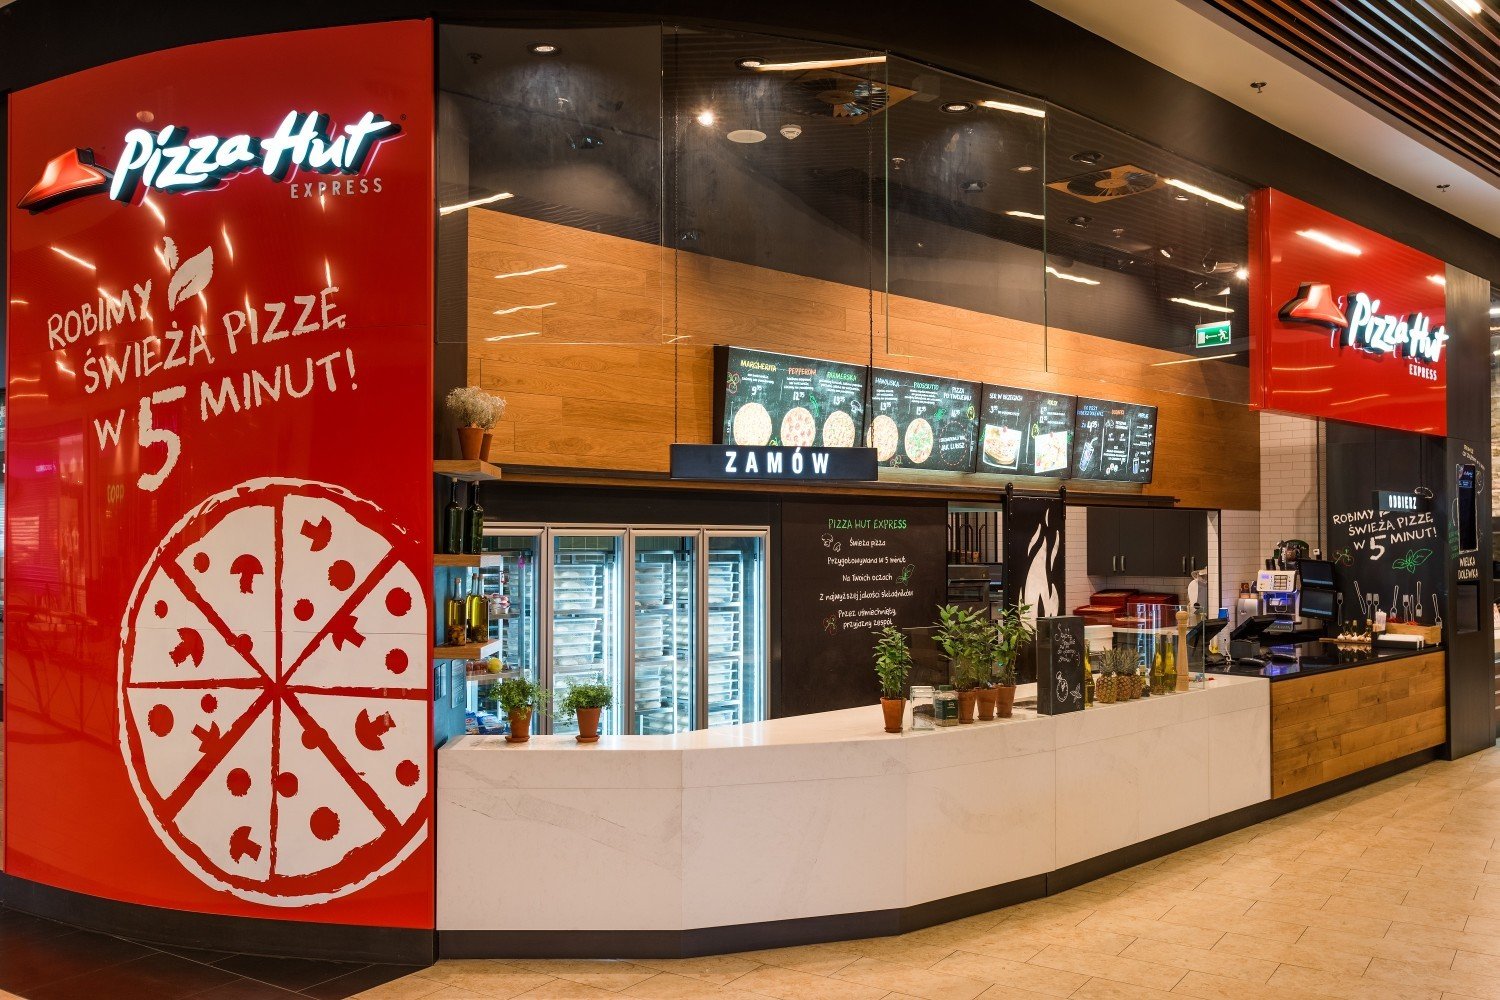 Pizza za darmo dla 500 pierwszych gości. Pizza Hut Express otwiera dzisiaj  pierwszą restaurację w Bielanach Wrocławskich. | Wrocław Nasze Miasto